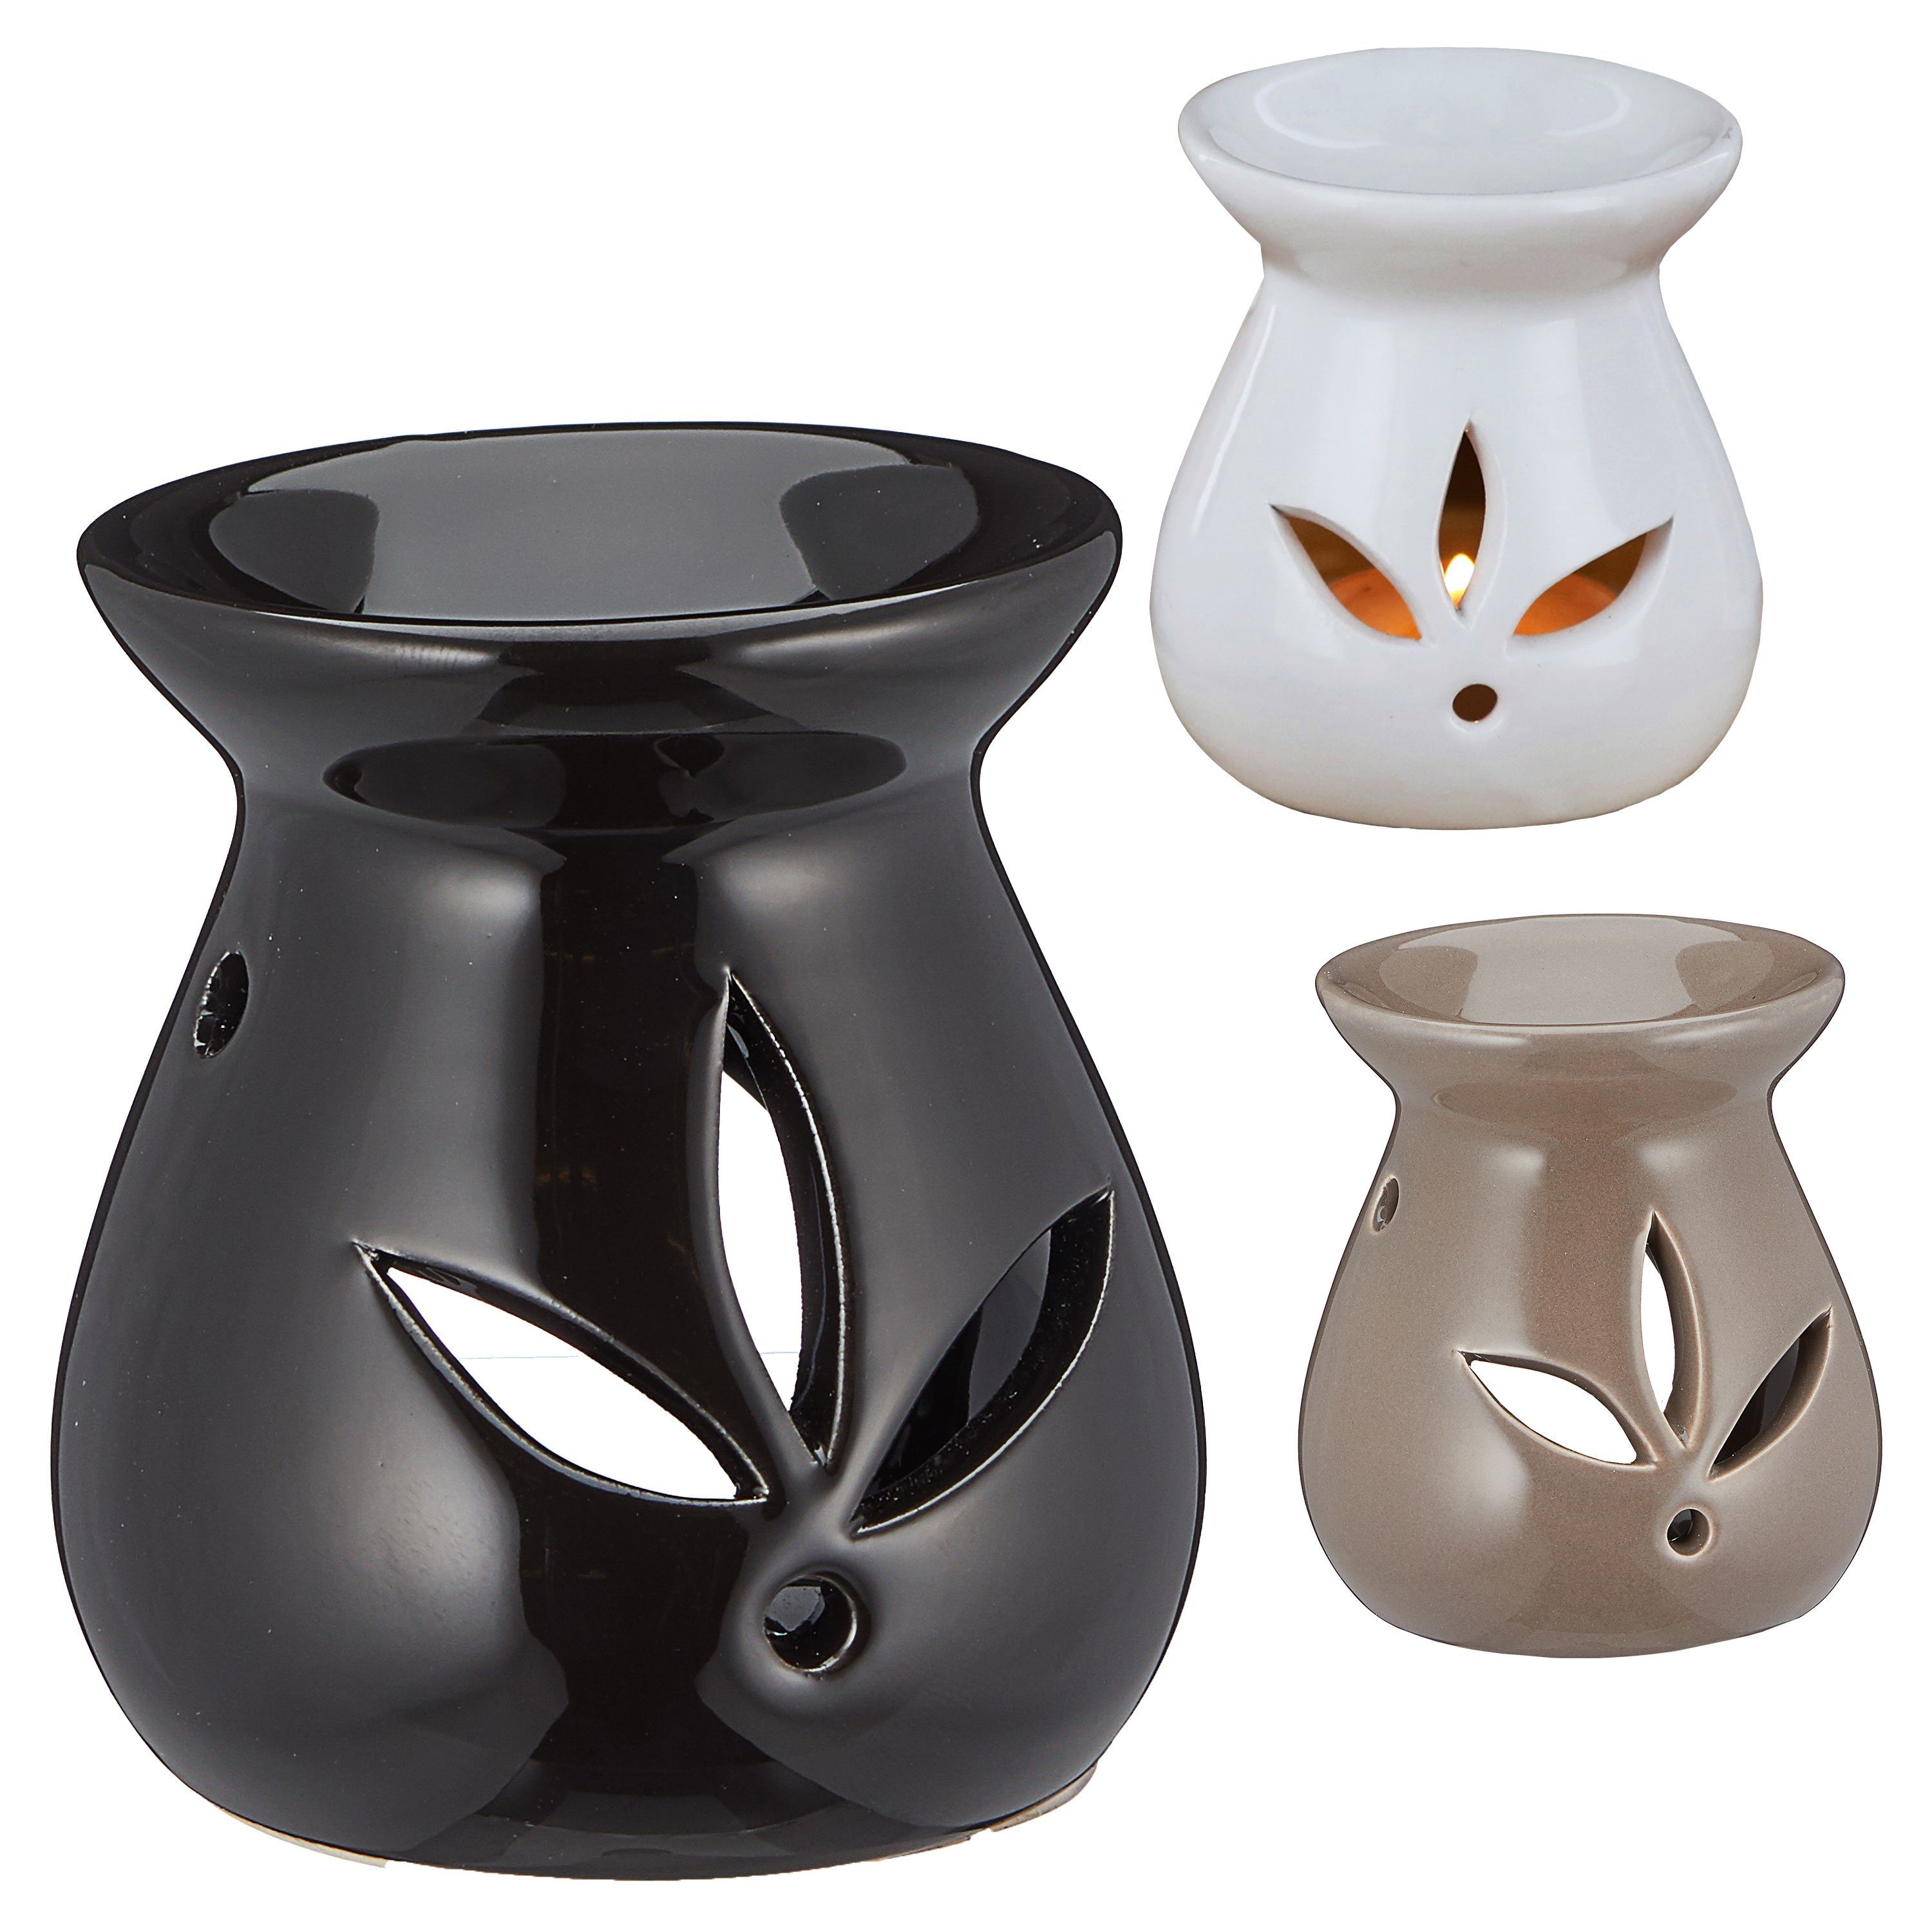 CEPEWA Duftlampe Duftlampe 3er Keramik weiß schwarz braun Raumduft Set Aromalampe